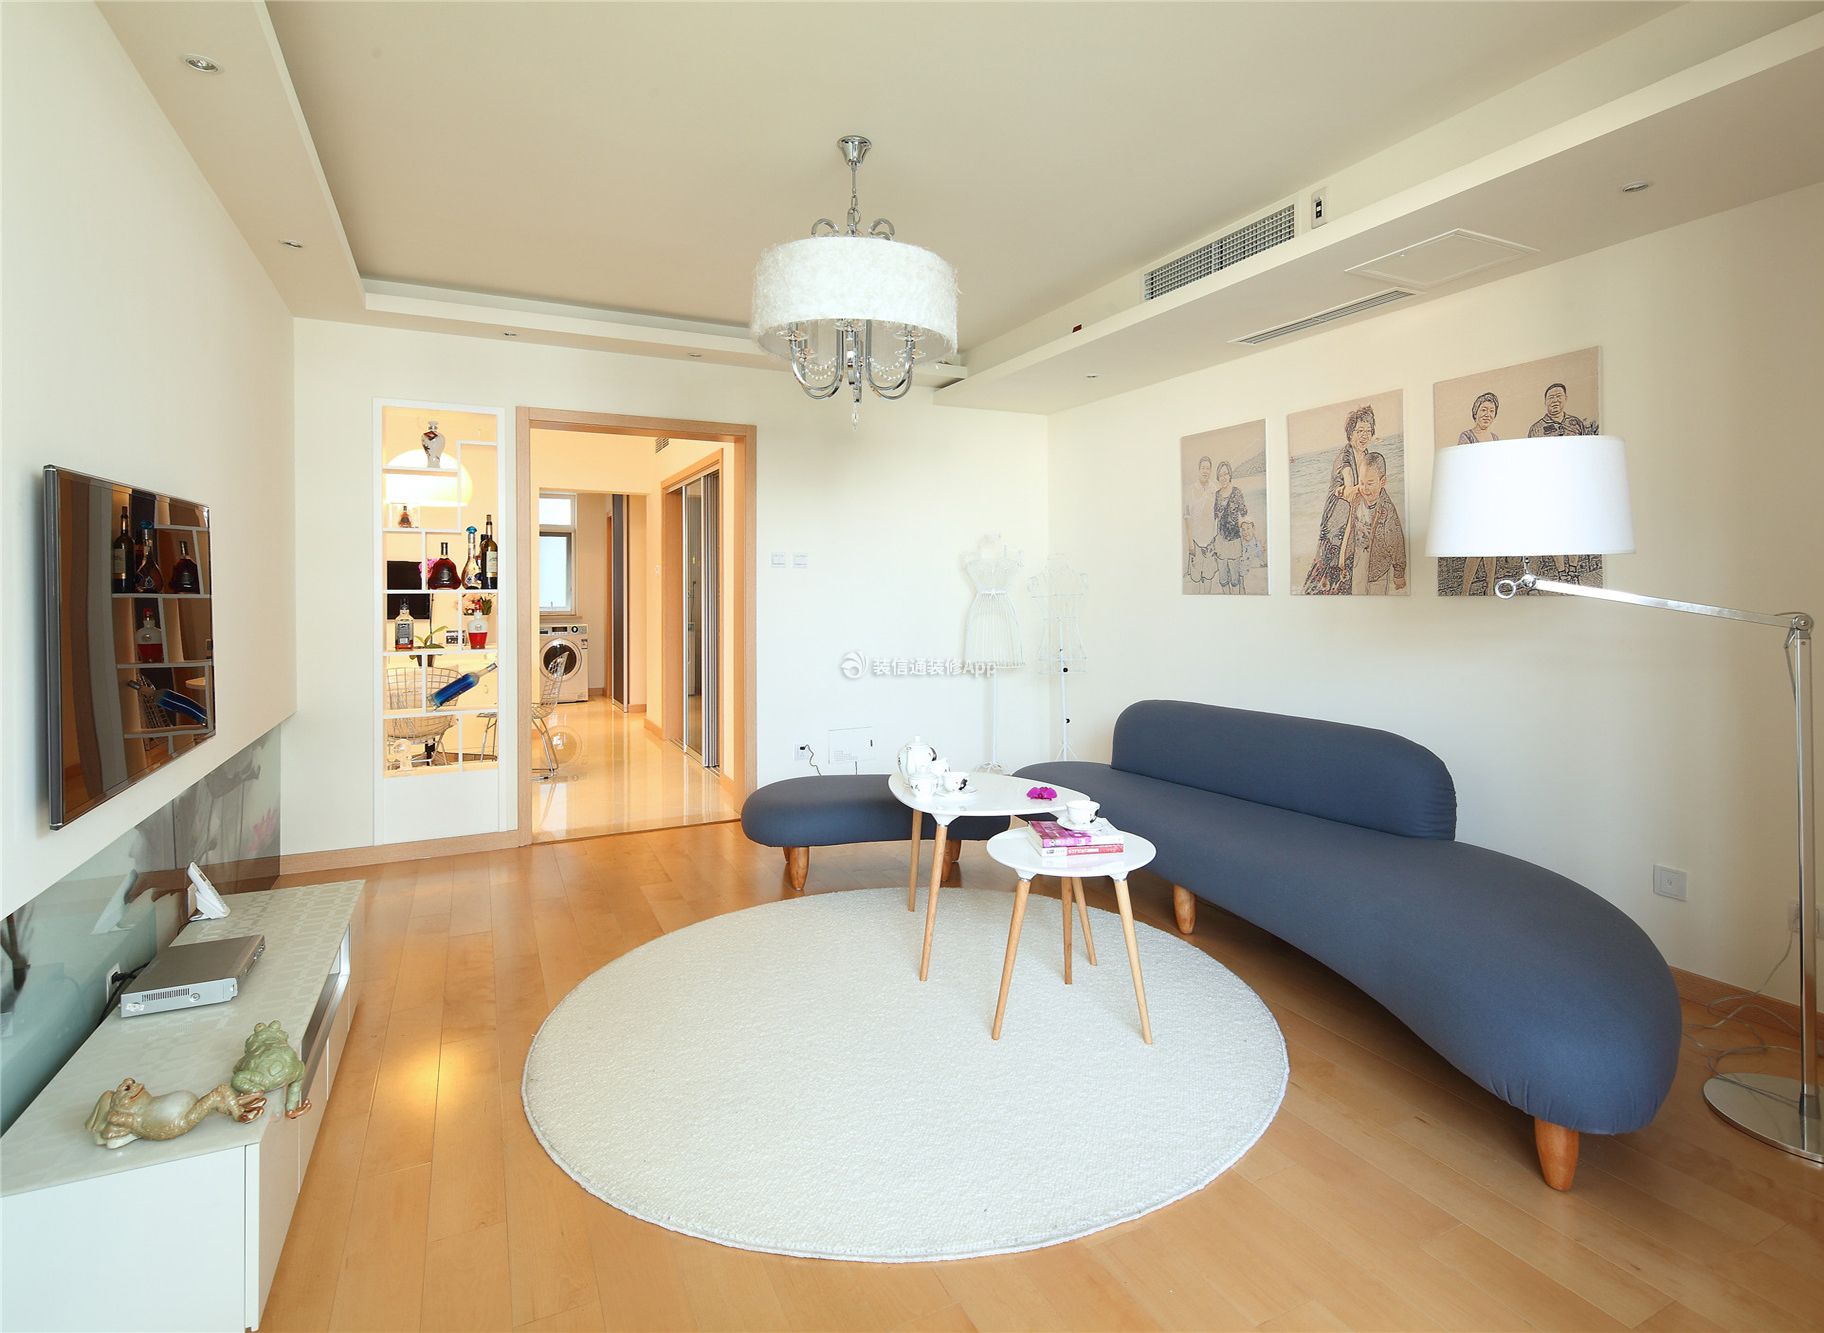 55平米小户型一居室日式客厅装修效果图片